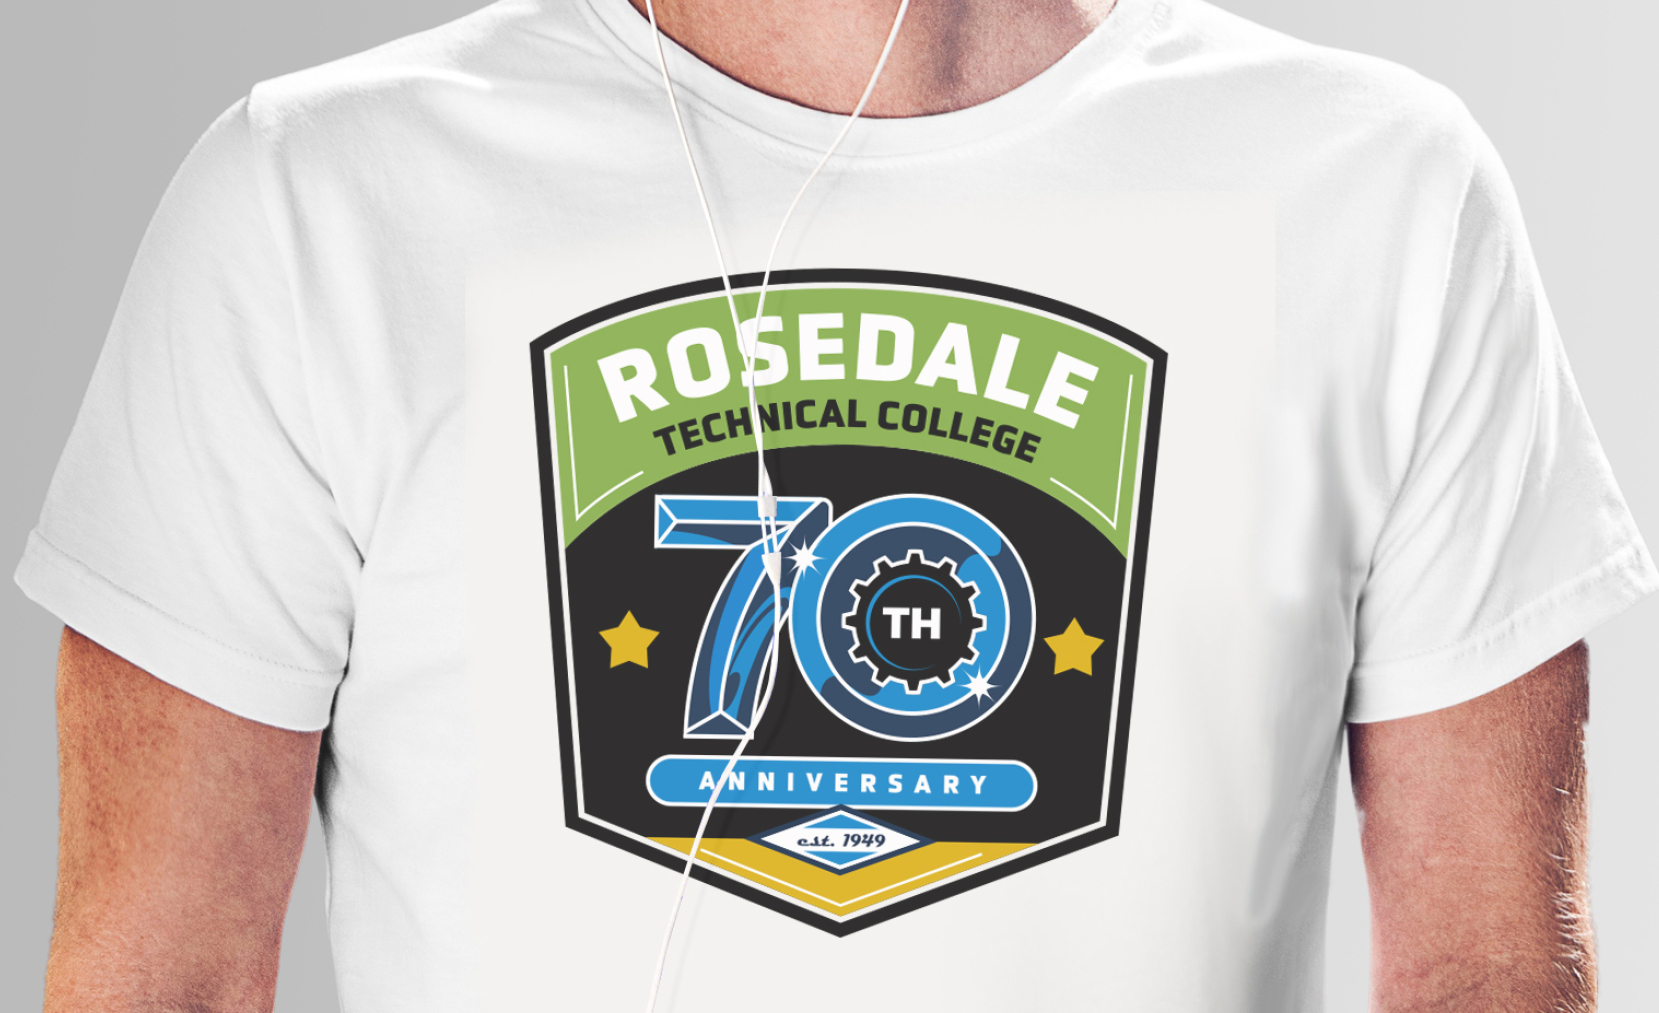 Rosedale Tech 70th anniversary logo tshirt